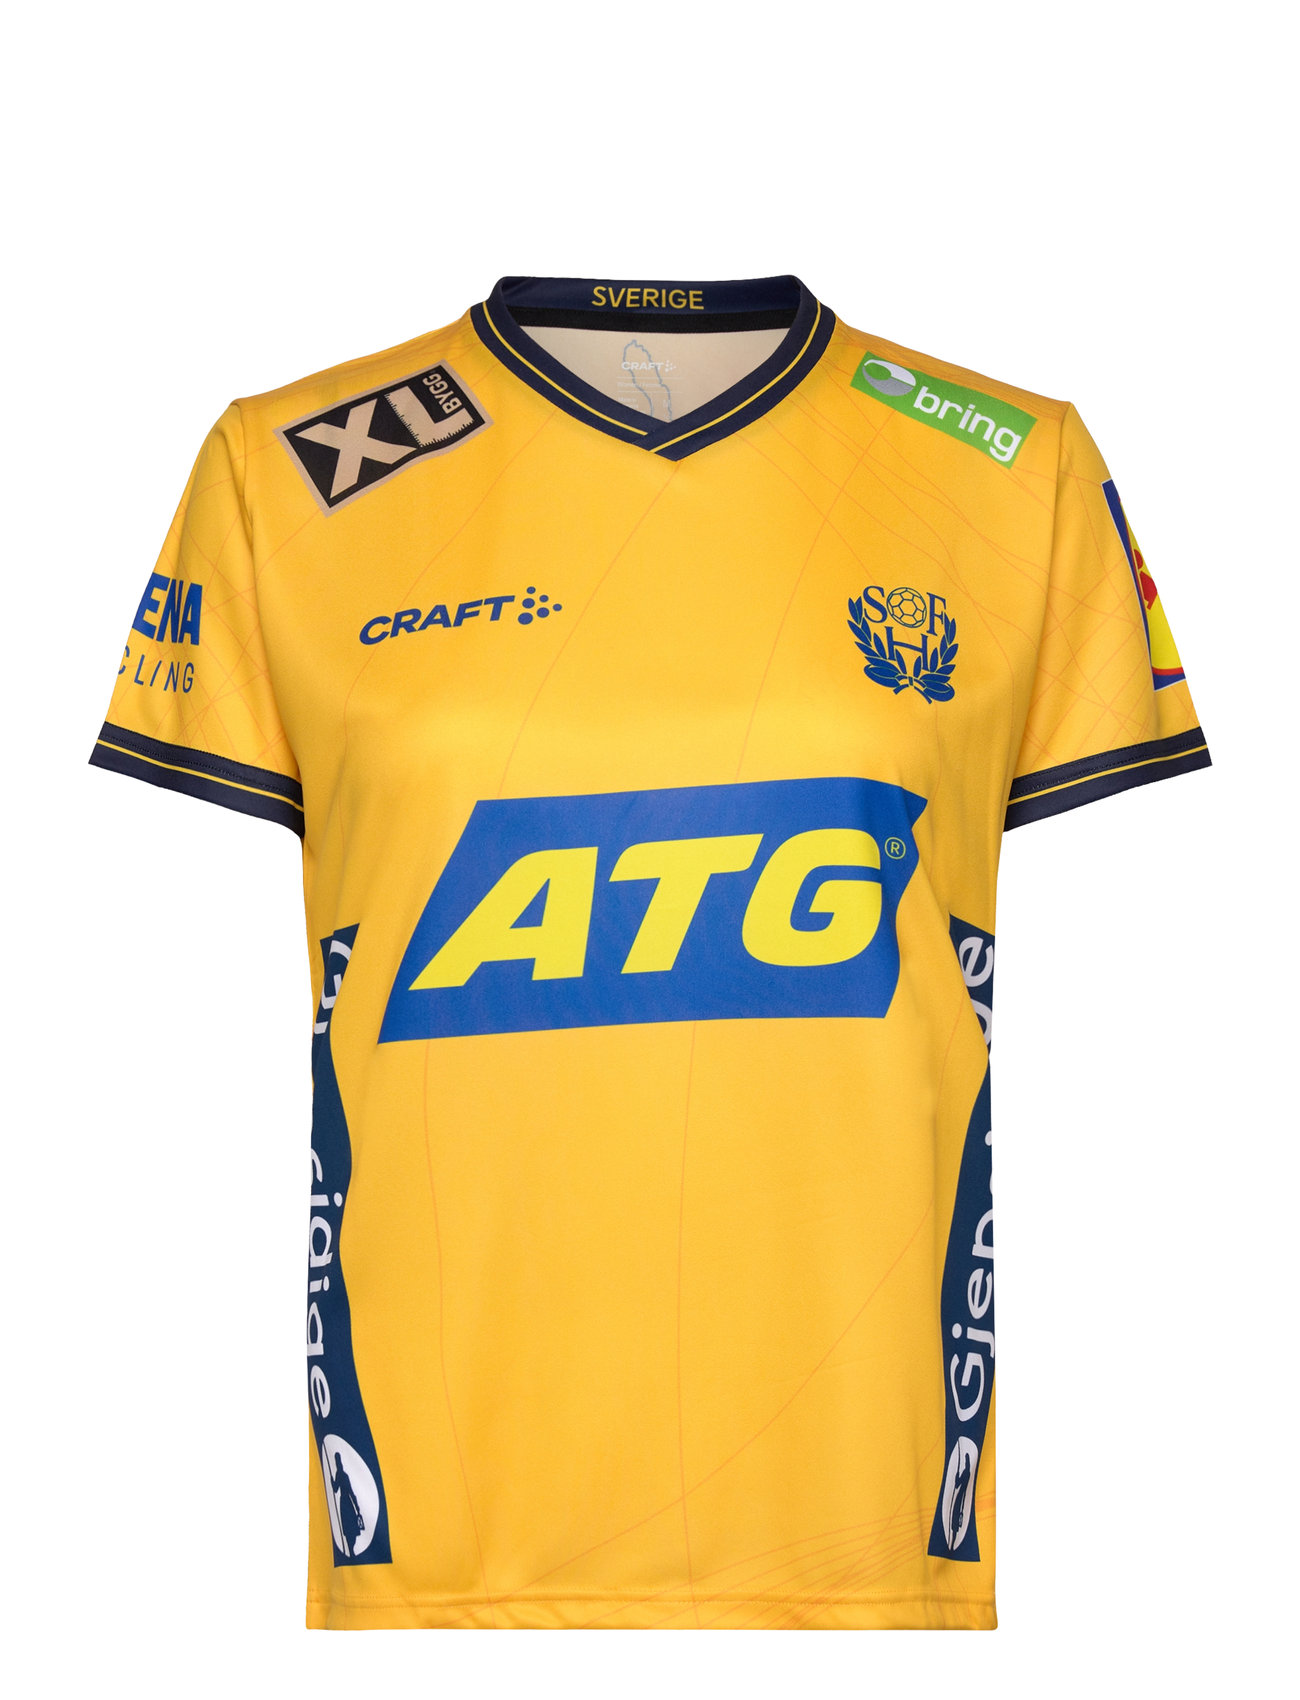 Sweden Handball Replica Tee W Sport T-shirts & Tops Short-sleeved Yellow Craft